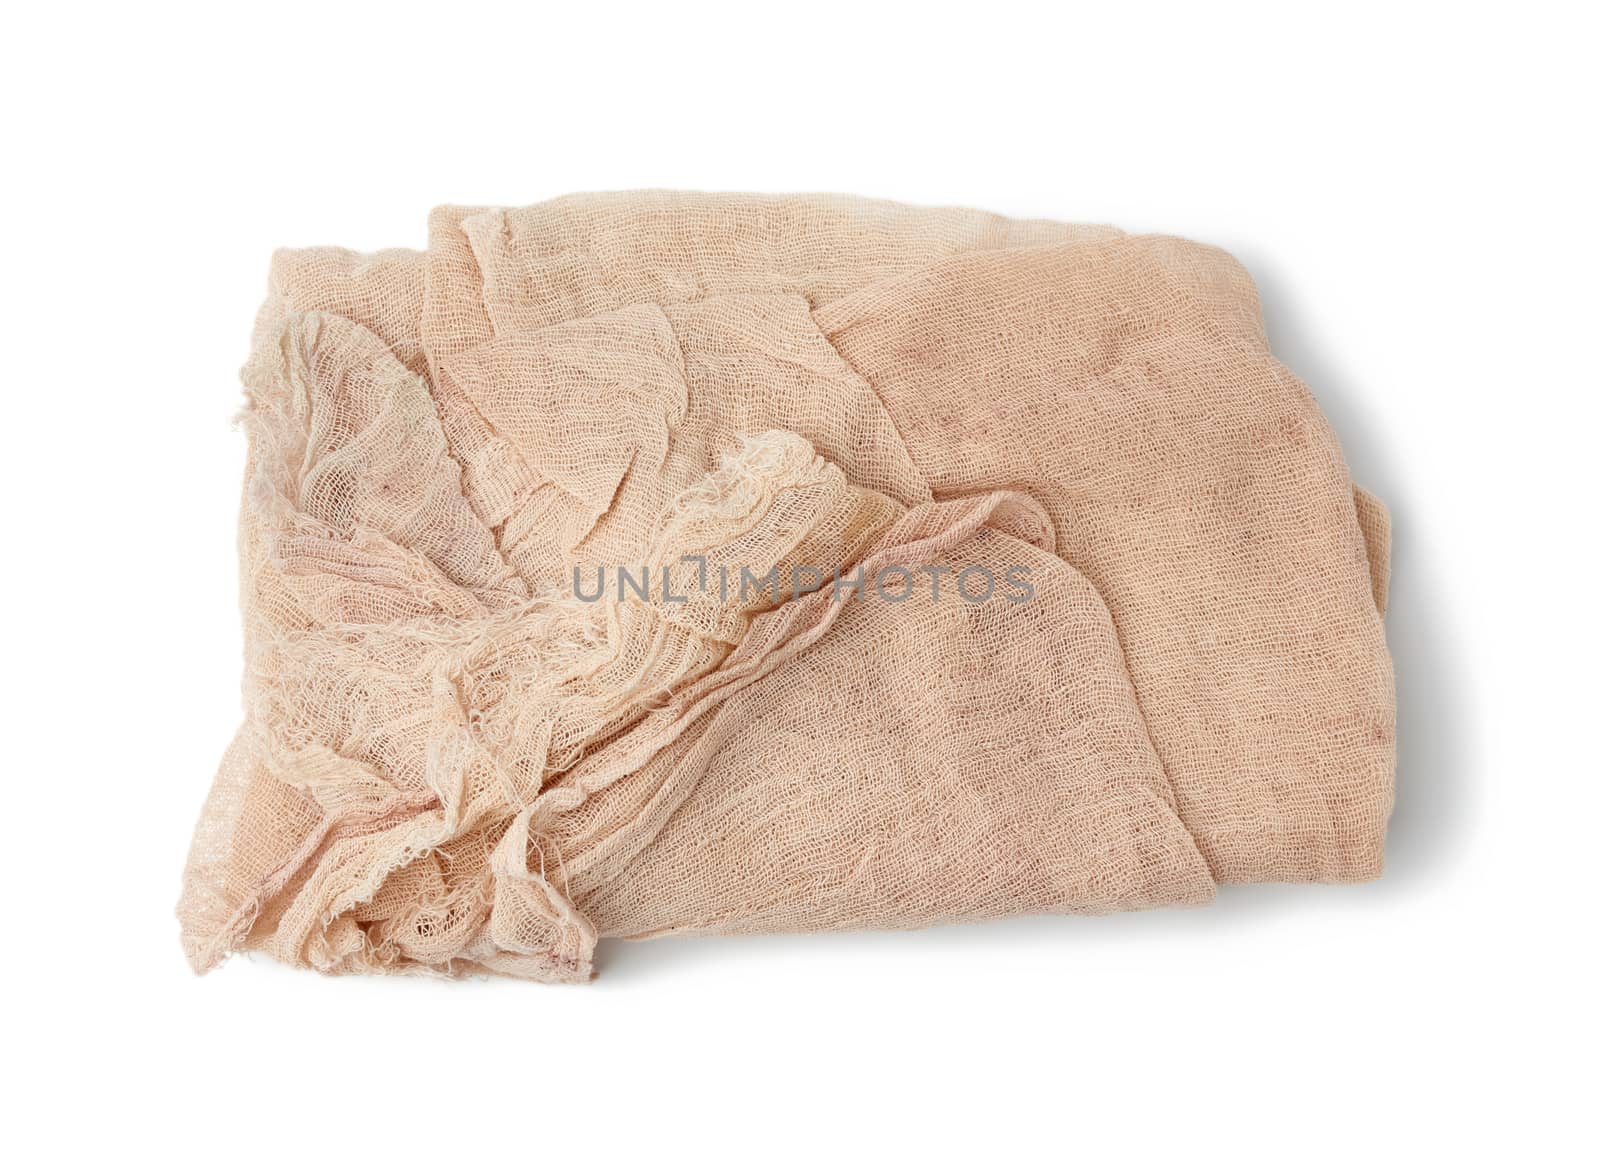 folded cotton beige gauze fabric isolated on white background by ndanko